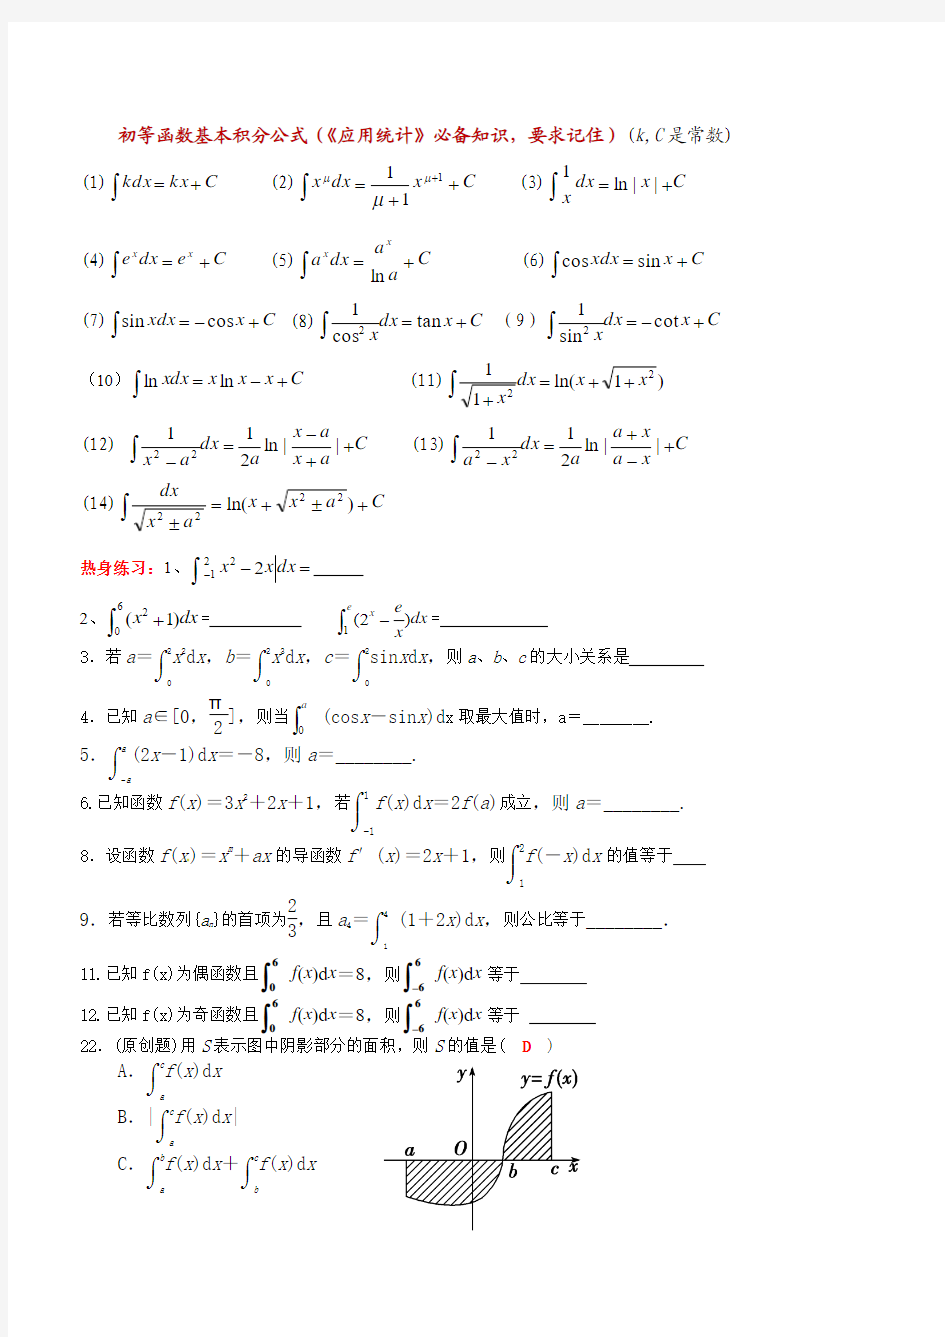 初等函数基本积分公式